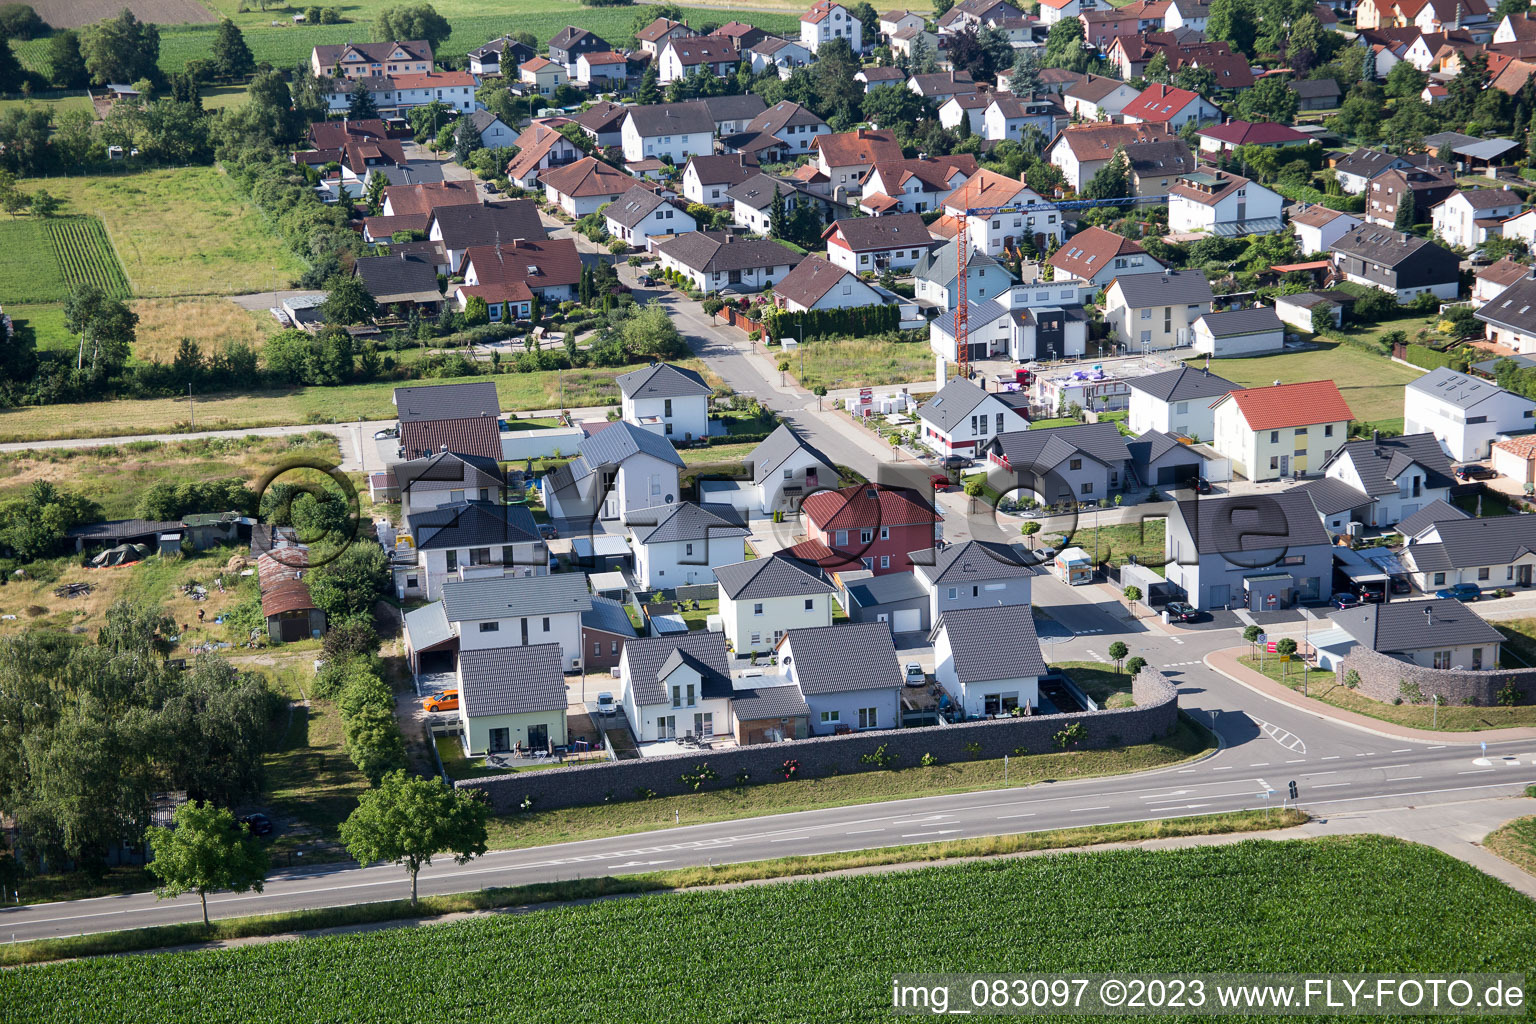 Minfeld im Bundesland Rheinland-Pfalz, Deutschland aus der Drohnenperspektive